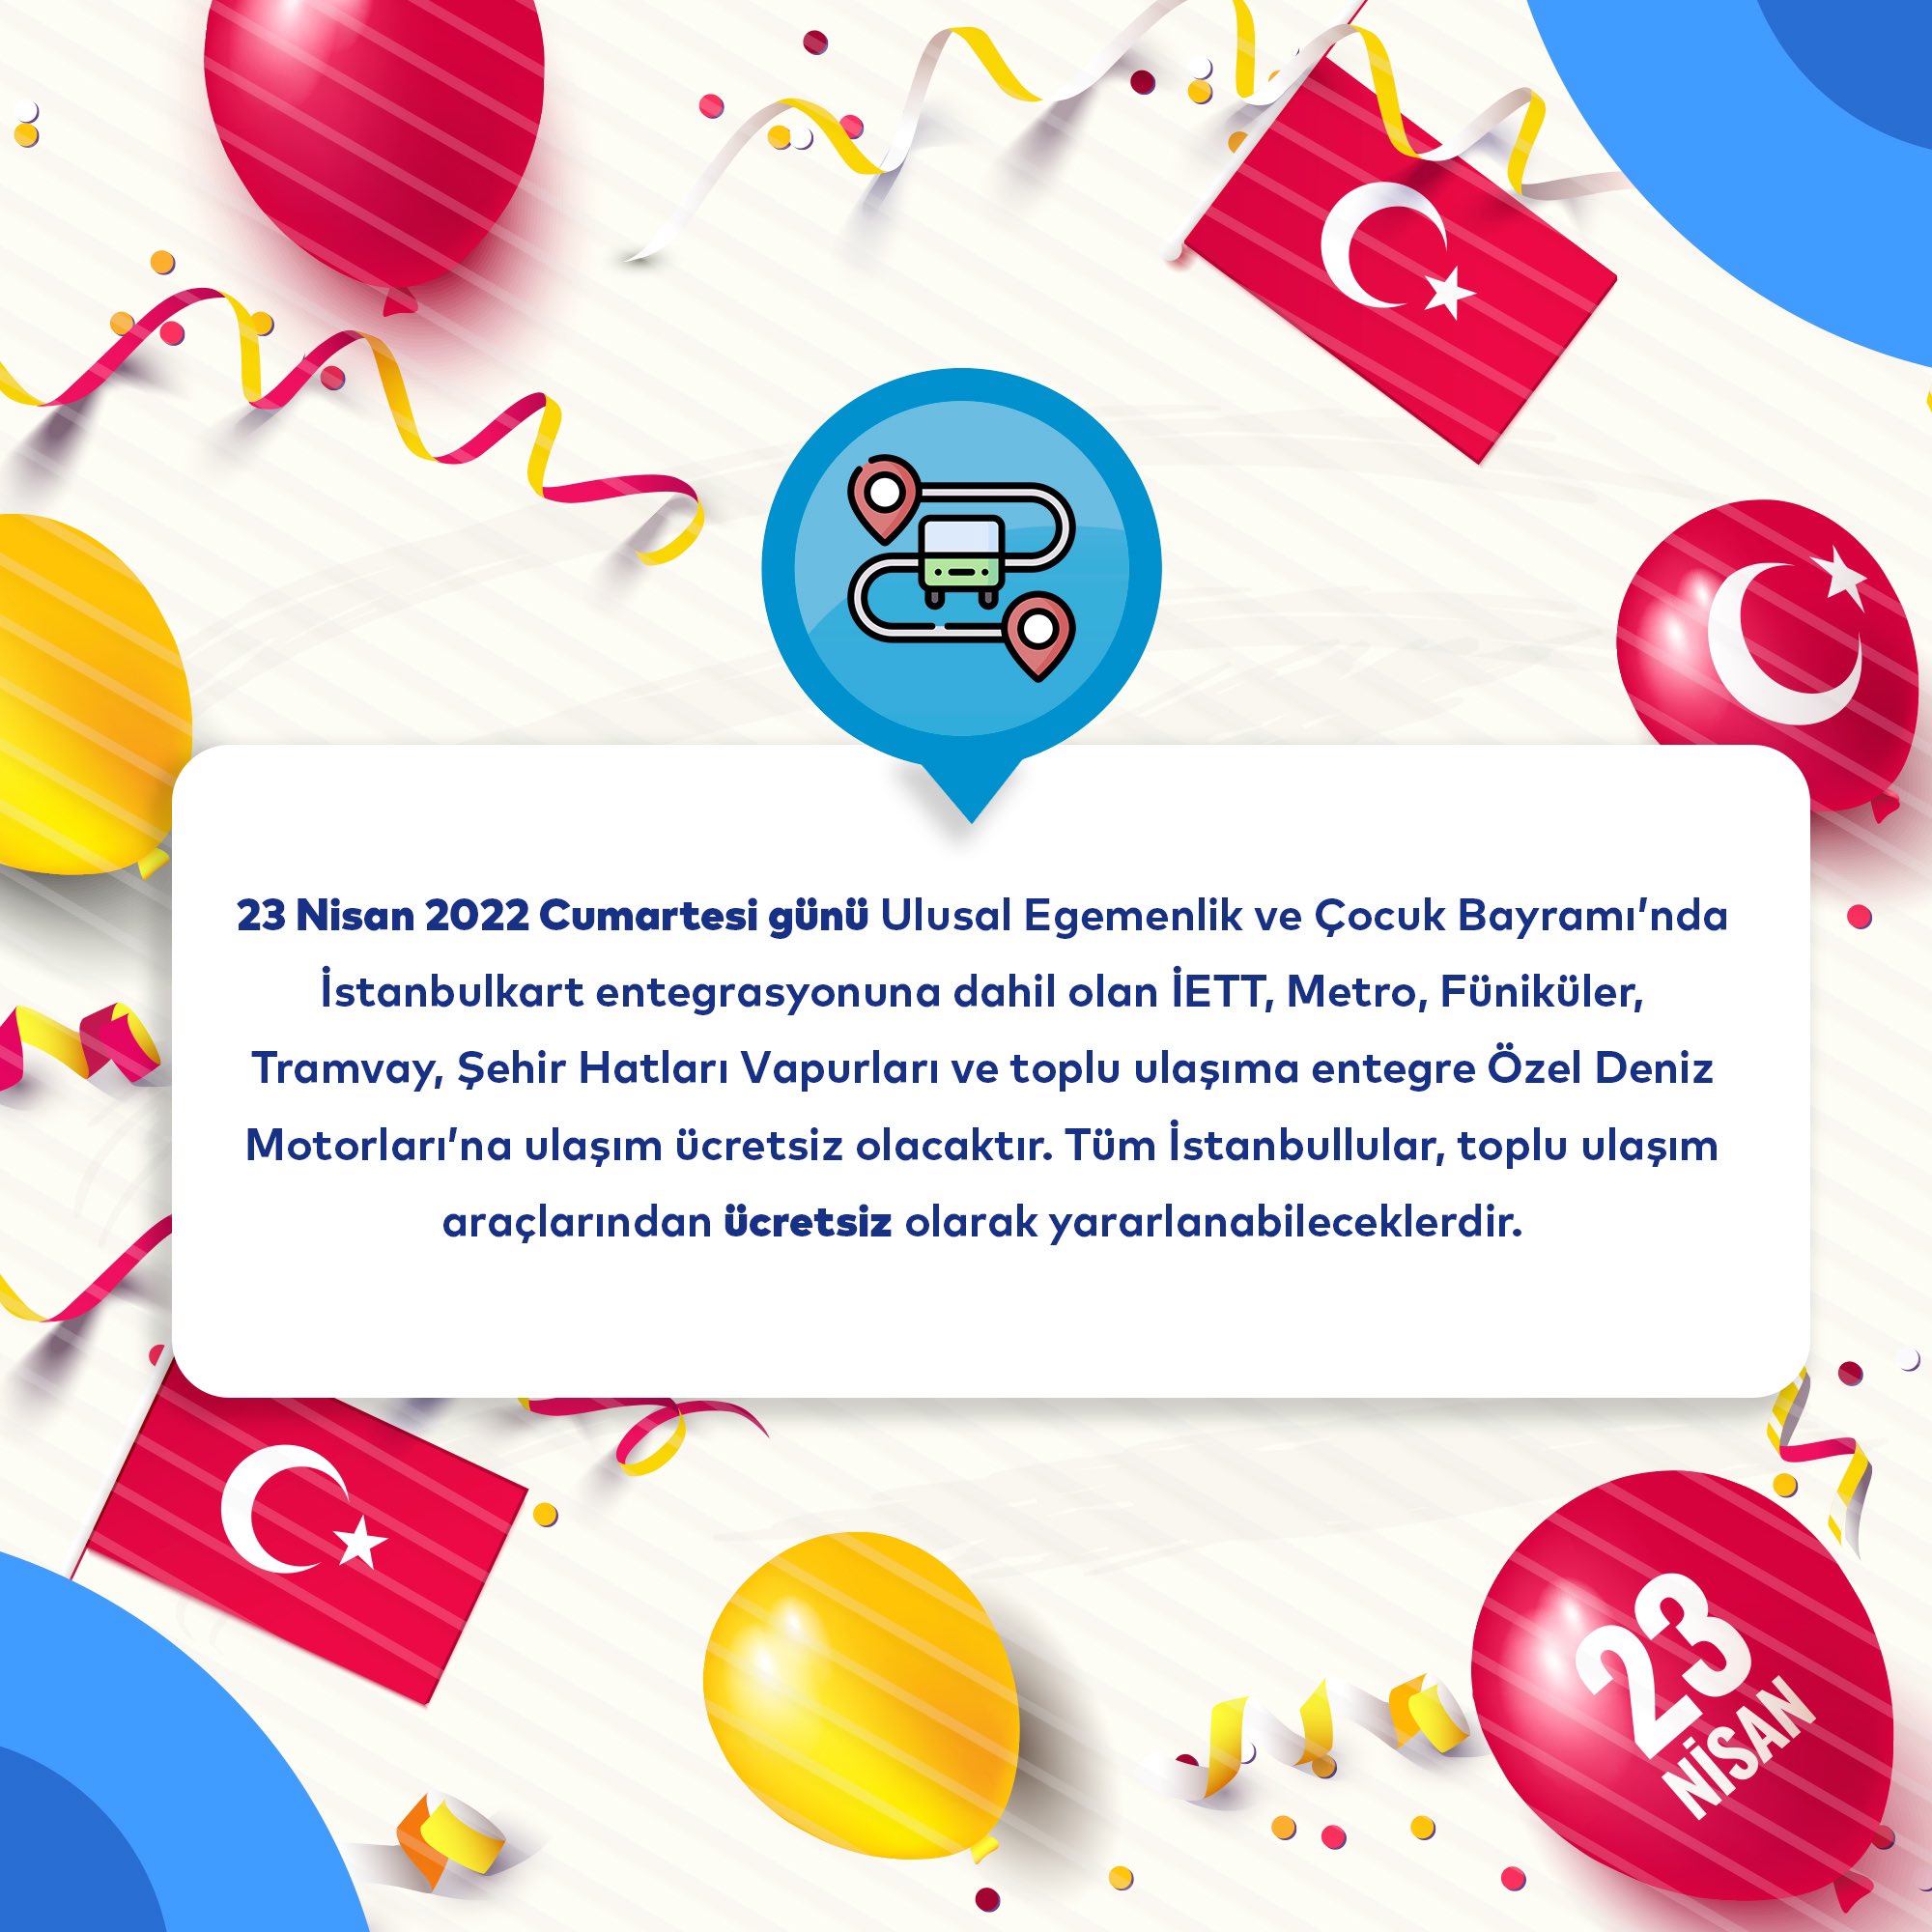 İBB ve Ulaştırma Bakanlığından vatandaşlara 23 Nisan müjdesi! Toplu taşıma ve Marmaray ücretsiz hizmet verecek 